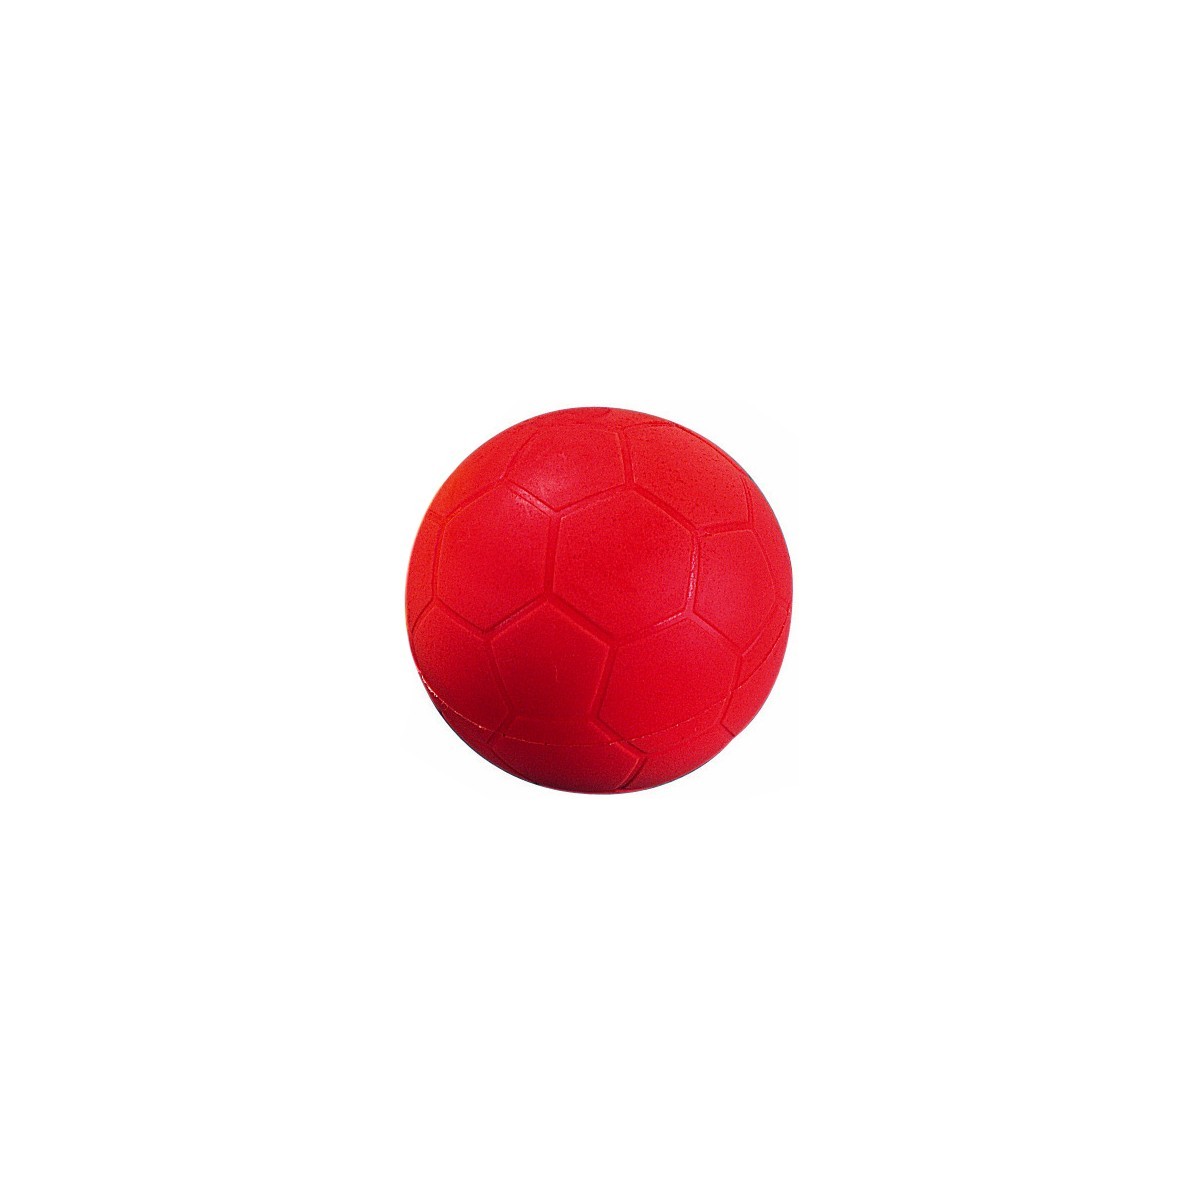 Ballon en mousse Spordas pour jouer au football. Ballon en mousse dense résistant diamètre 20 cm